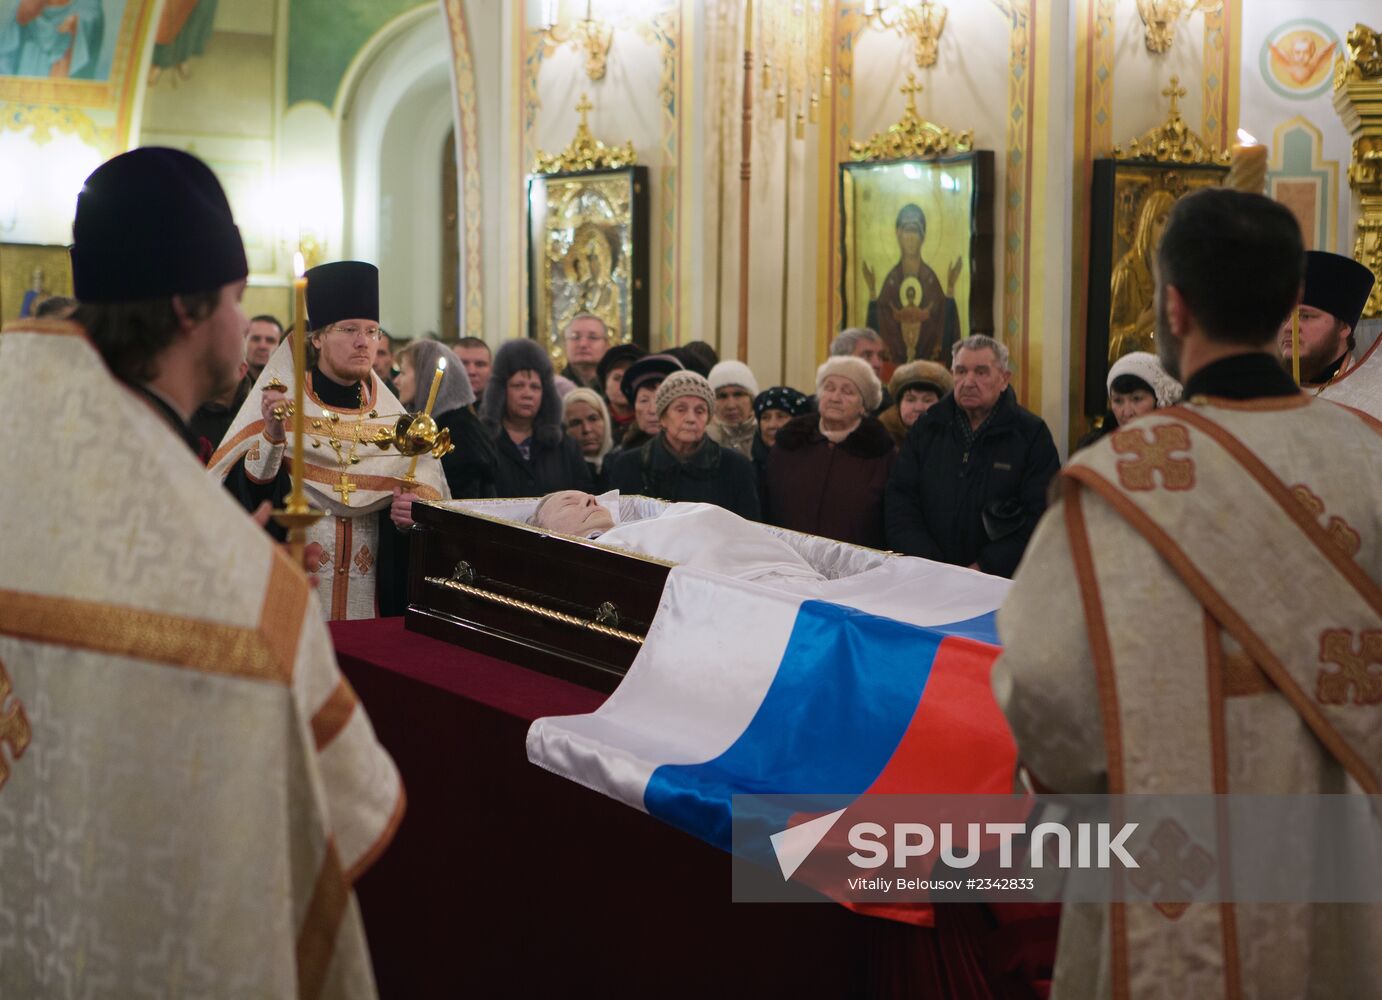 Funeral of legendary firearms designer Mikhail Kalashnikov in Izhevsk